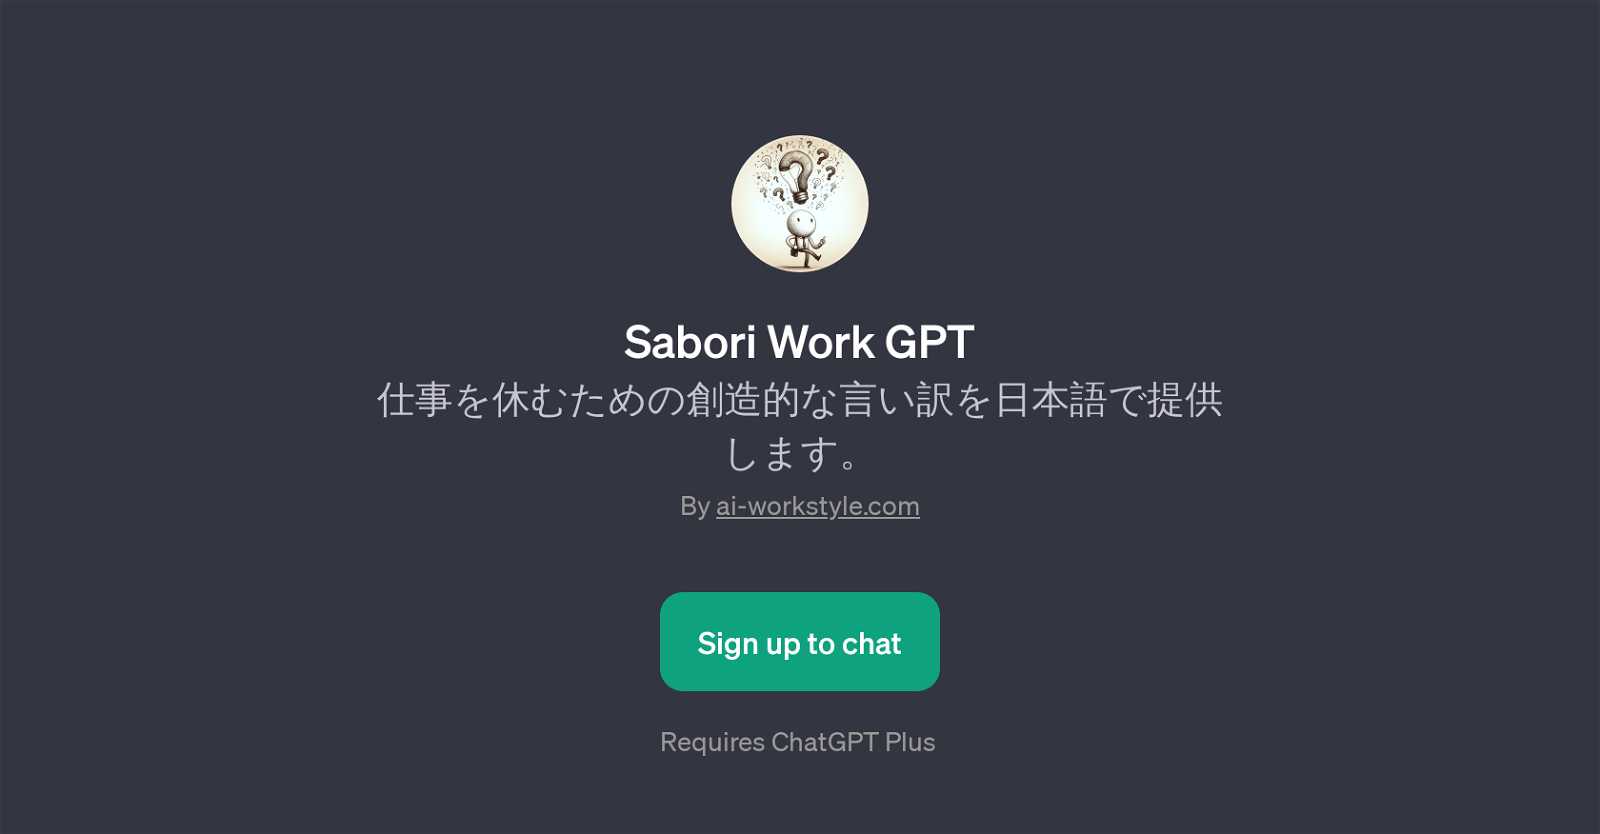 Sabori Work GPT website